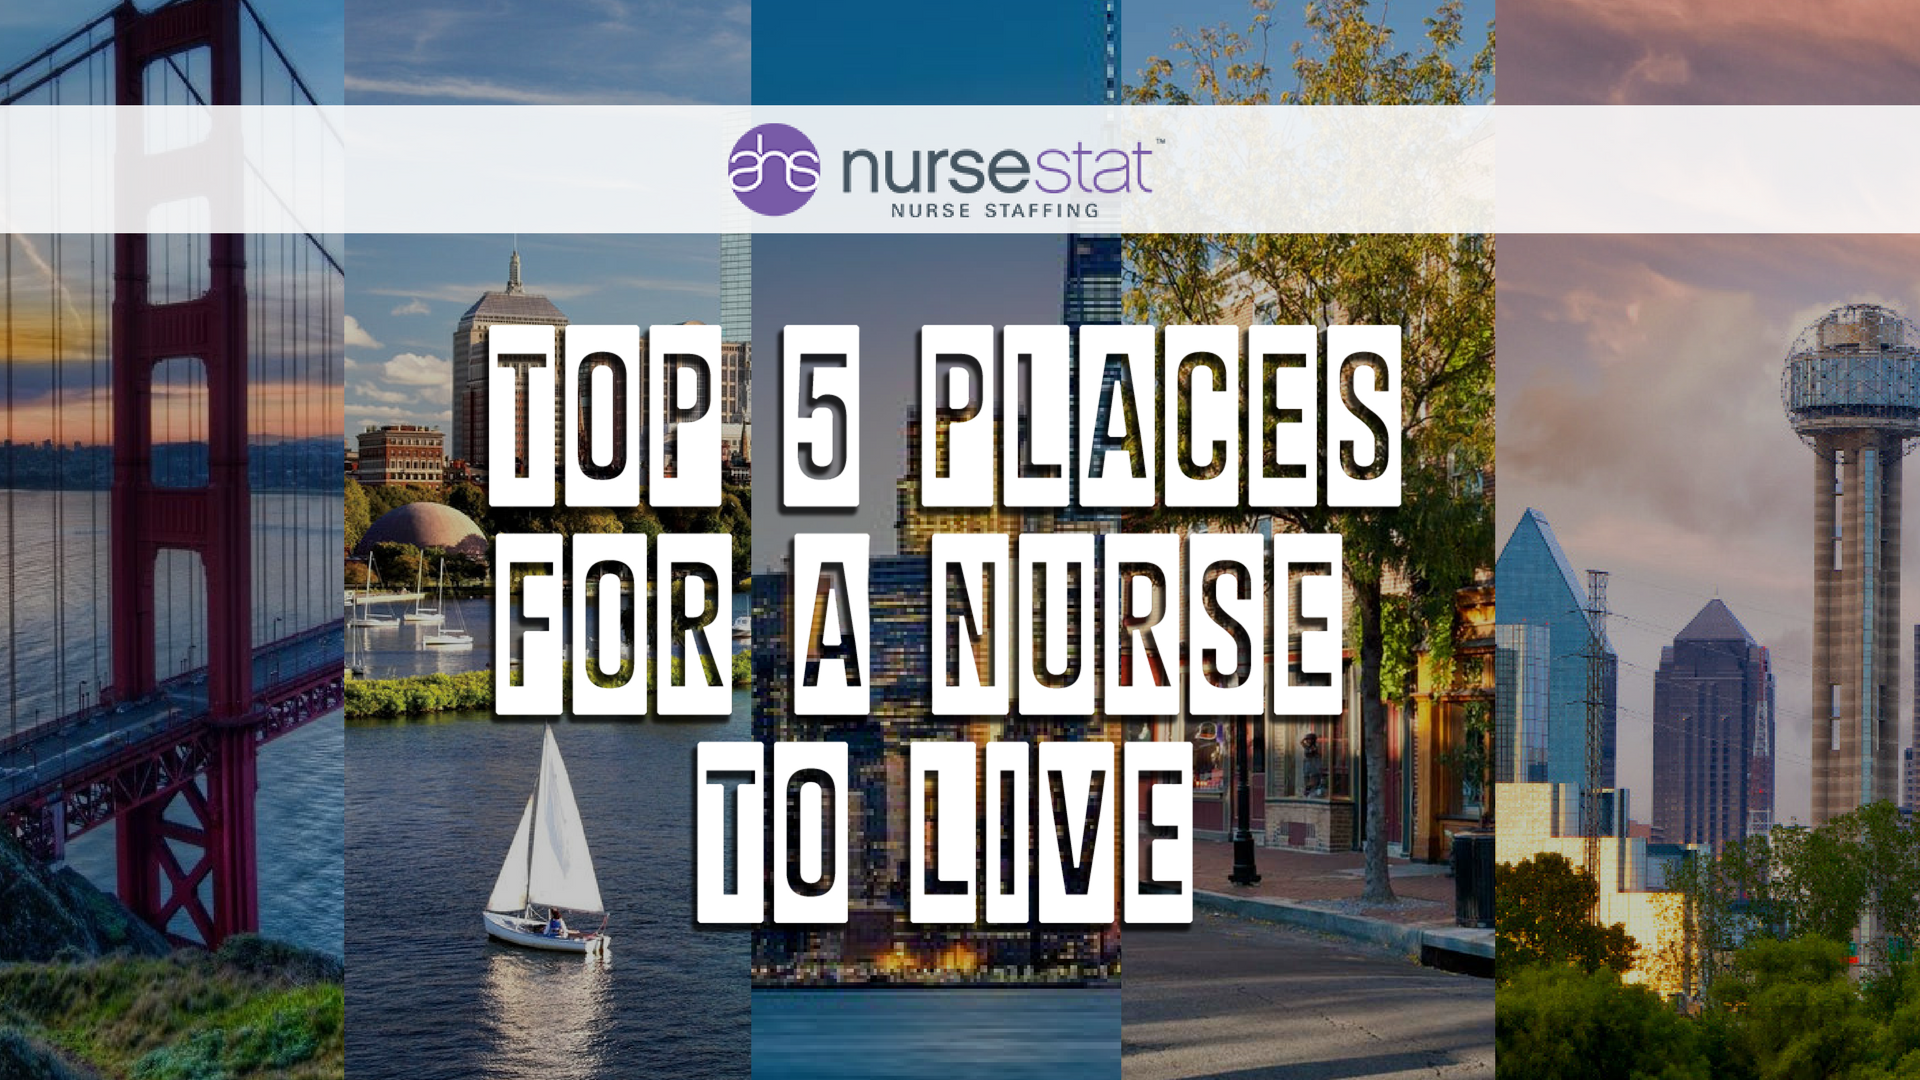 Top 5 Places For A Nurse To Live - AHS NurseStat